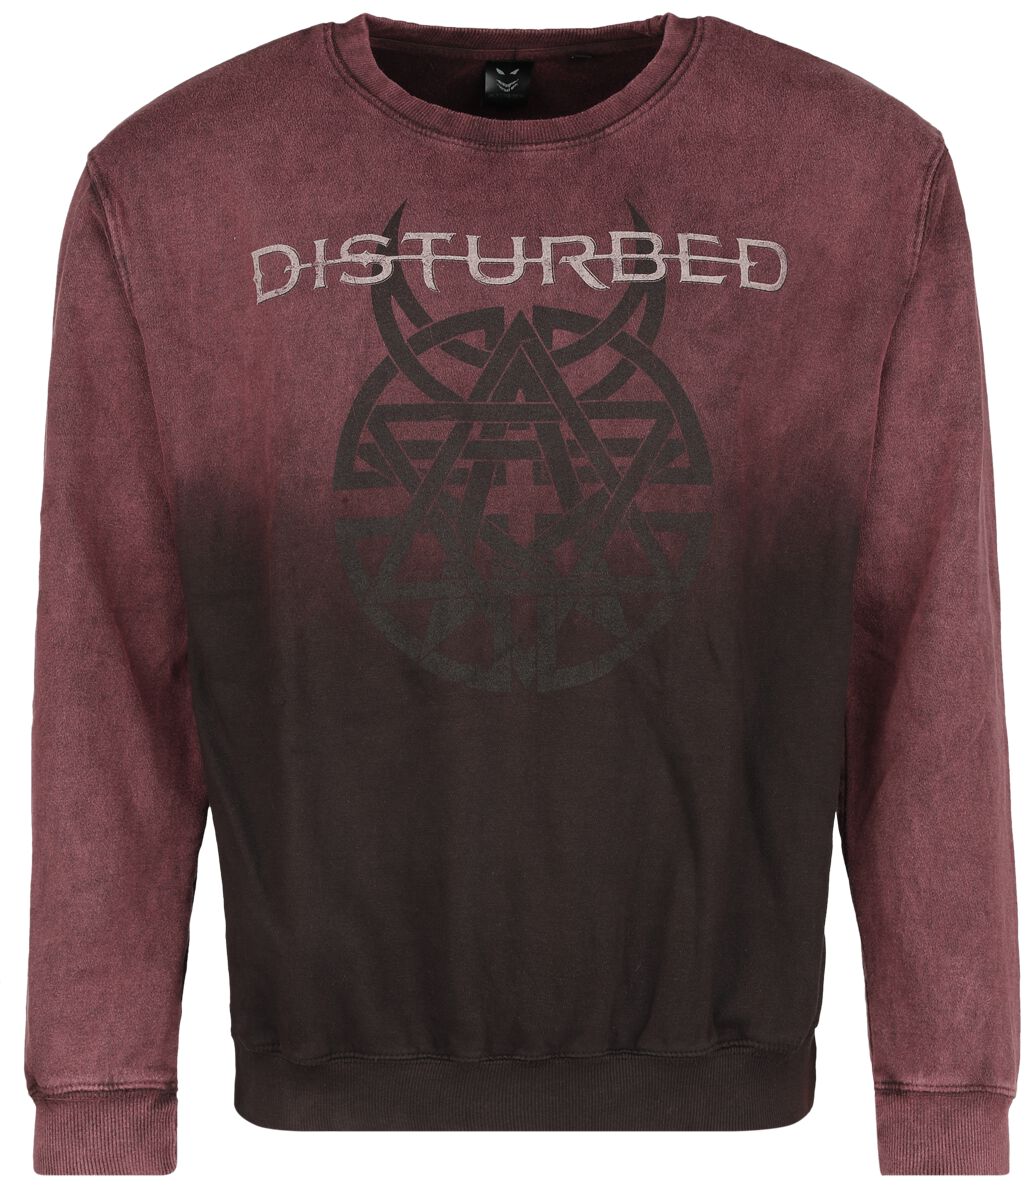 Disturbed Believe Symbol Sweatshirt dunkelrot in XL von Disturbed